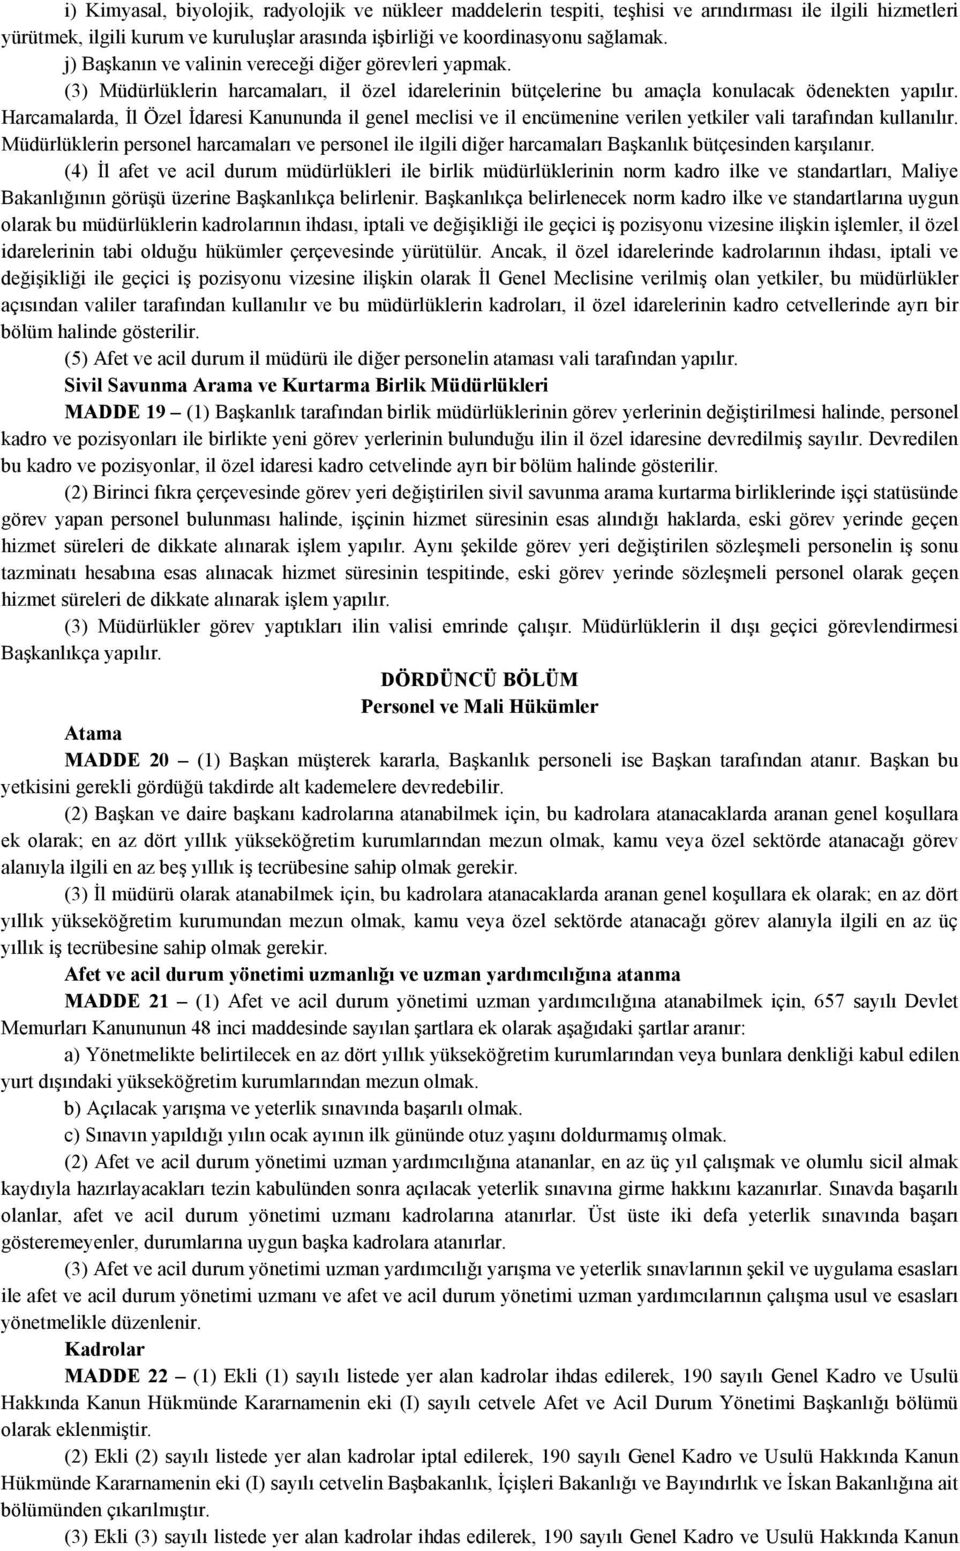 Harcamalarda, Đl Özel Đdaresi Kanununda il genel meclisi ve il encümenine verilen yetkiler vali tarafından kullanılır.